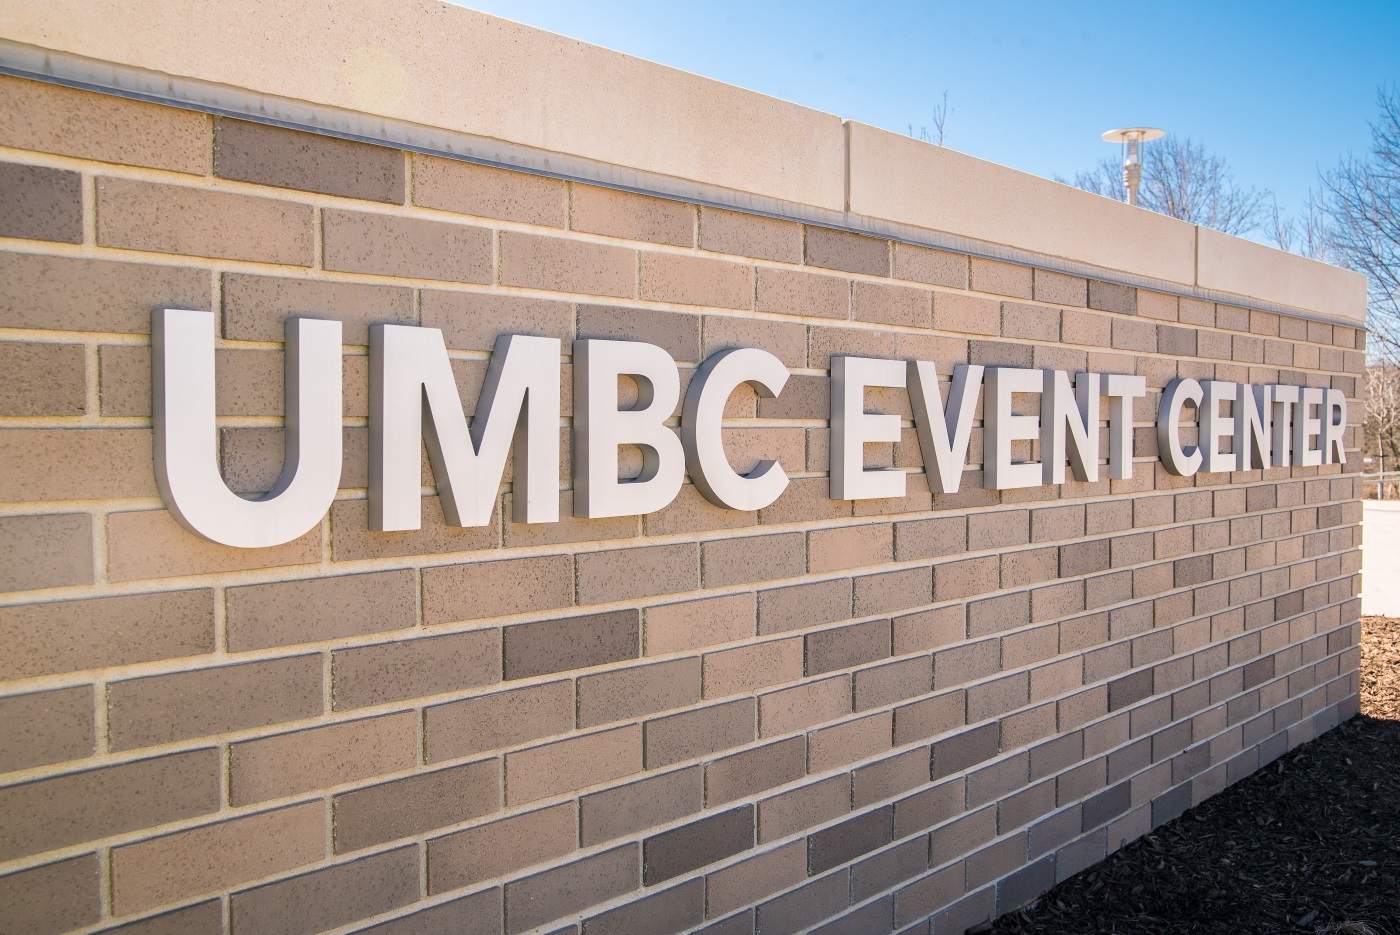 UMBC EVENT CENTER